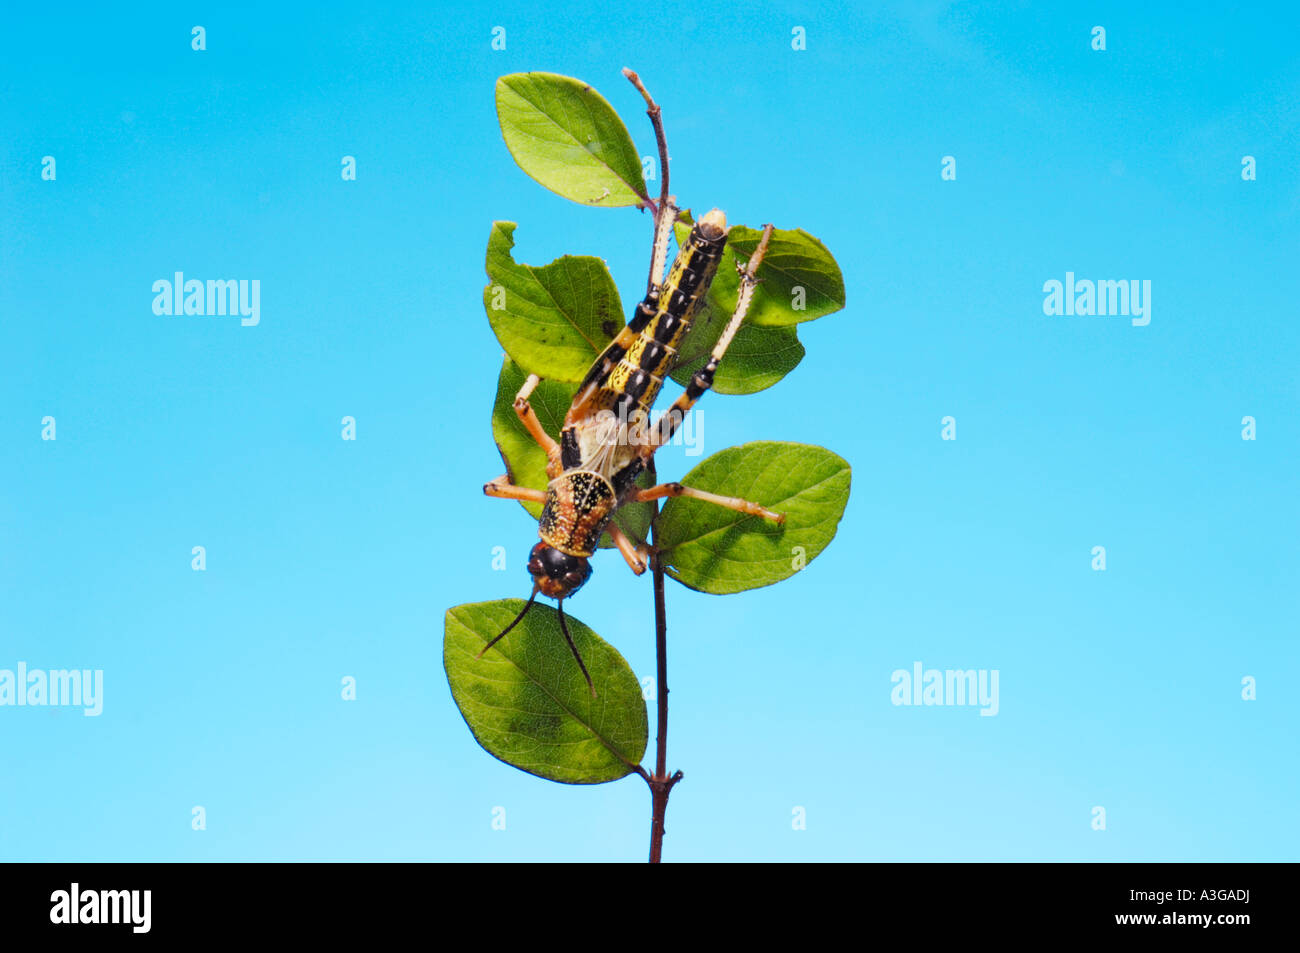 1 eine afrikanische Wüste Heuschrecke Schistocerca Gregaria Halbwüchsige GRASSHOPPER essen Feed-grünes Blatt blau einfarbigen Hintergrund Wanderer zu Fuß Stockfoto